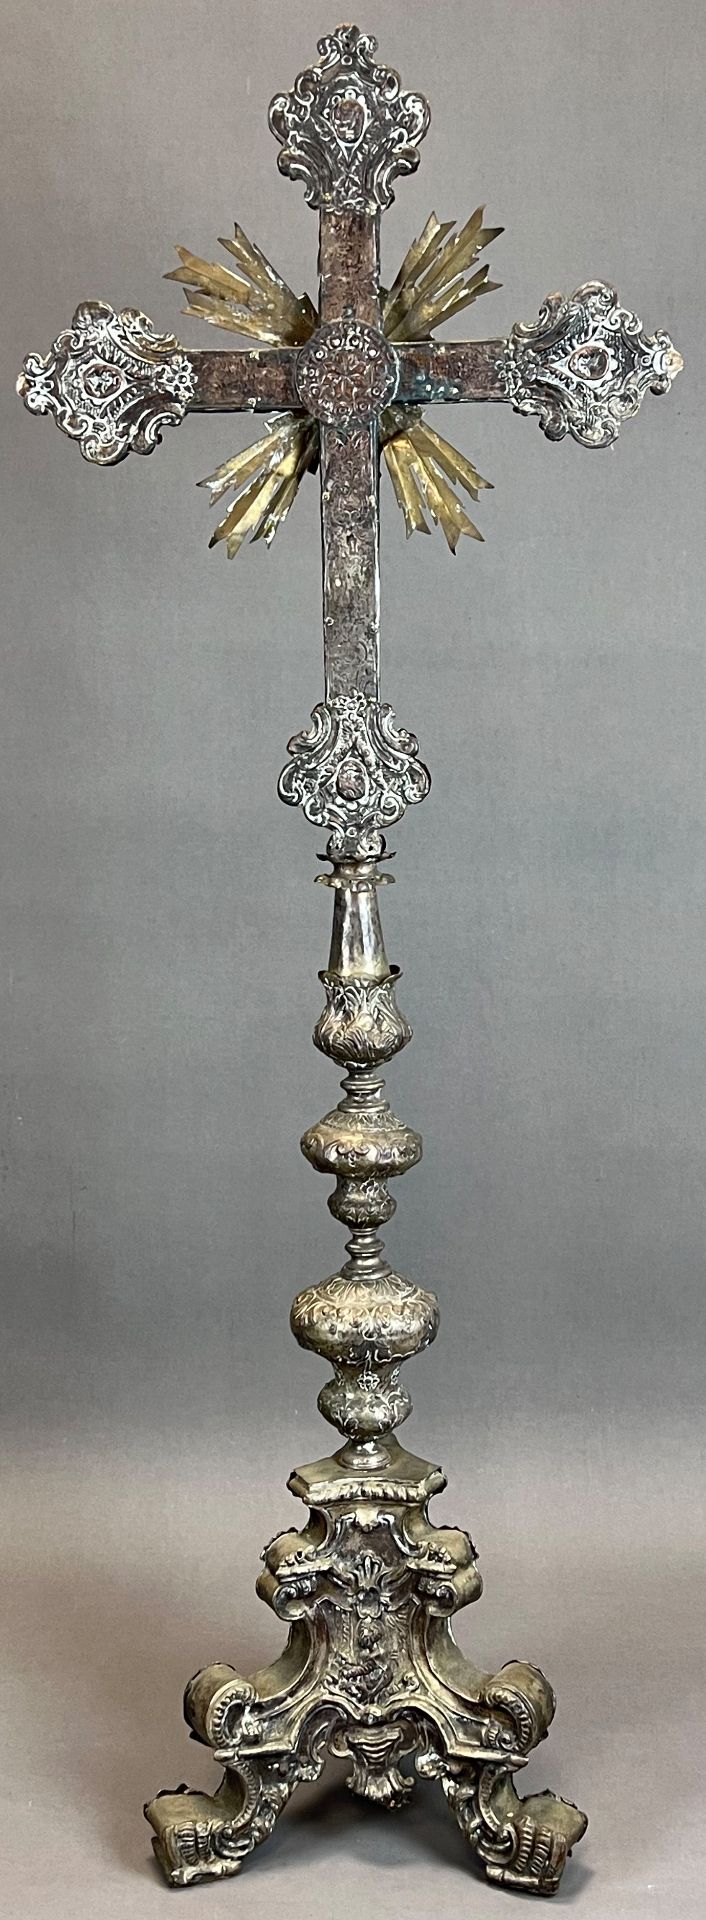 Großes Standkreuz. Altarkreuz. Um 1700. Frankreich. - Bild 8 aus 16